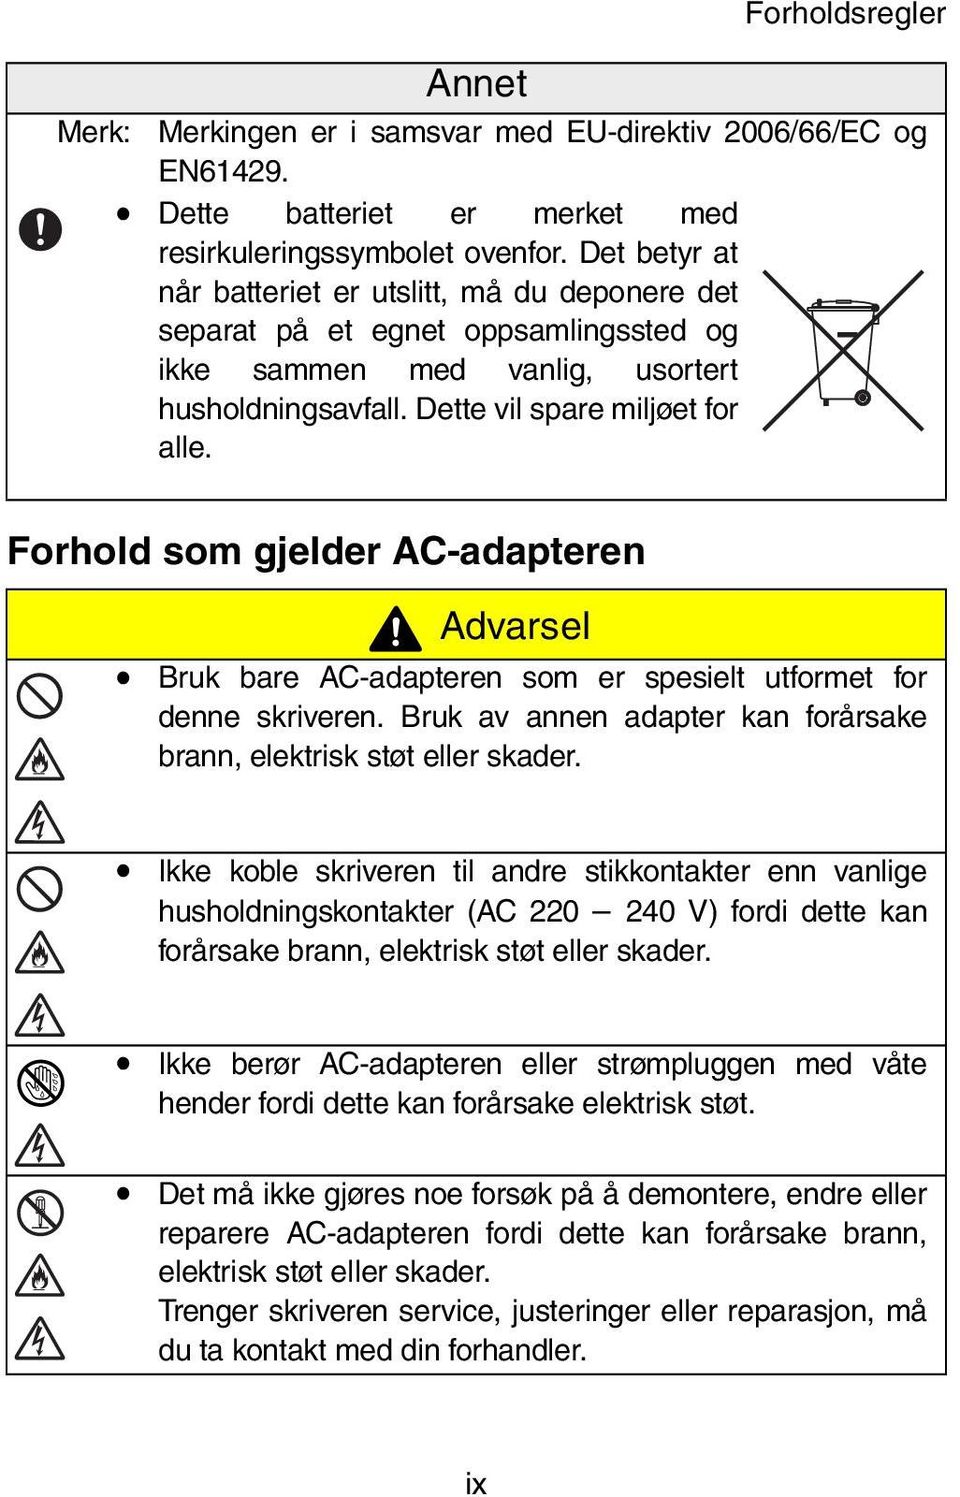 Forhold som gjelder AC-adapteren Advarsel Bruk bare AC-adapteren som er spesielt utformet for denne skriveren. Bruk av annen adapter kan forårsake brann, elektrisk støt eller skader.